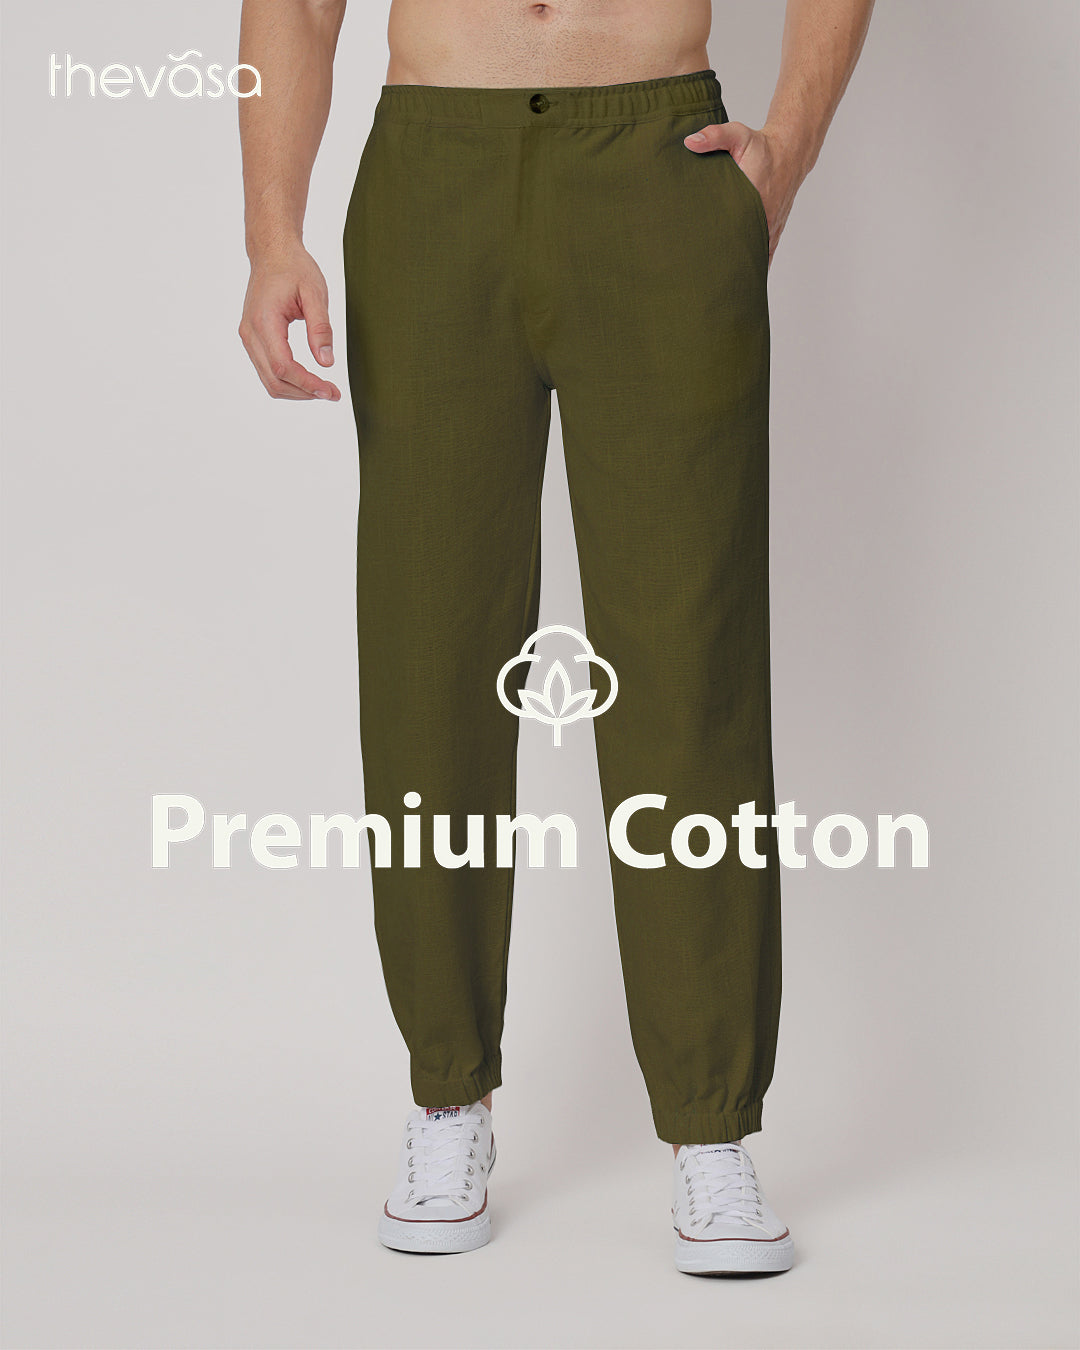 Flex Relax Men's Olive Green Jog Pants